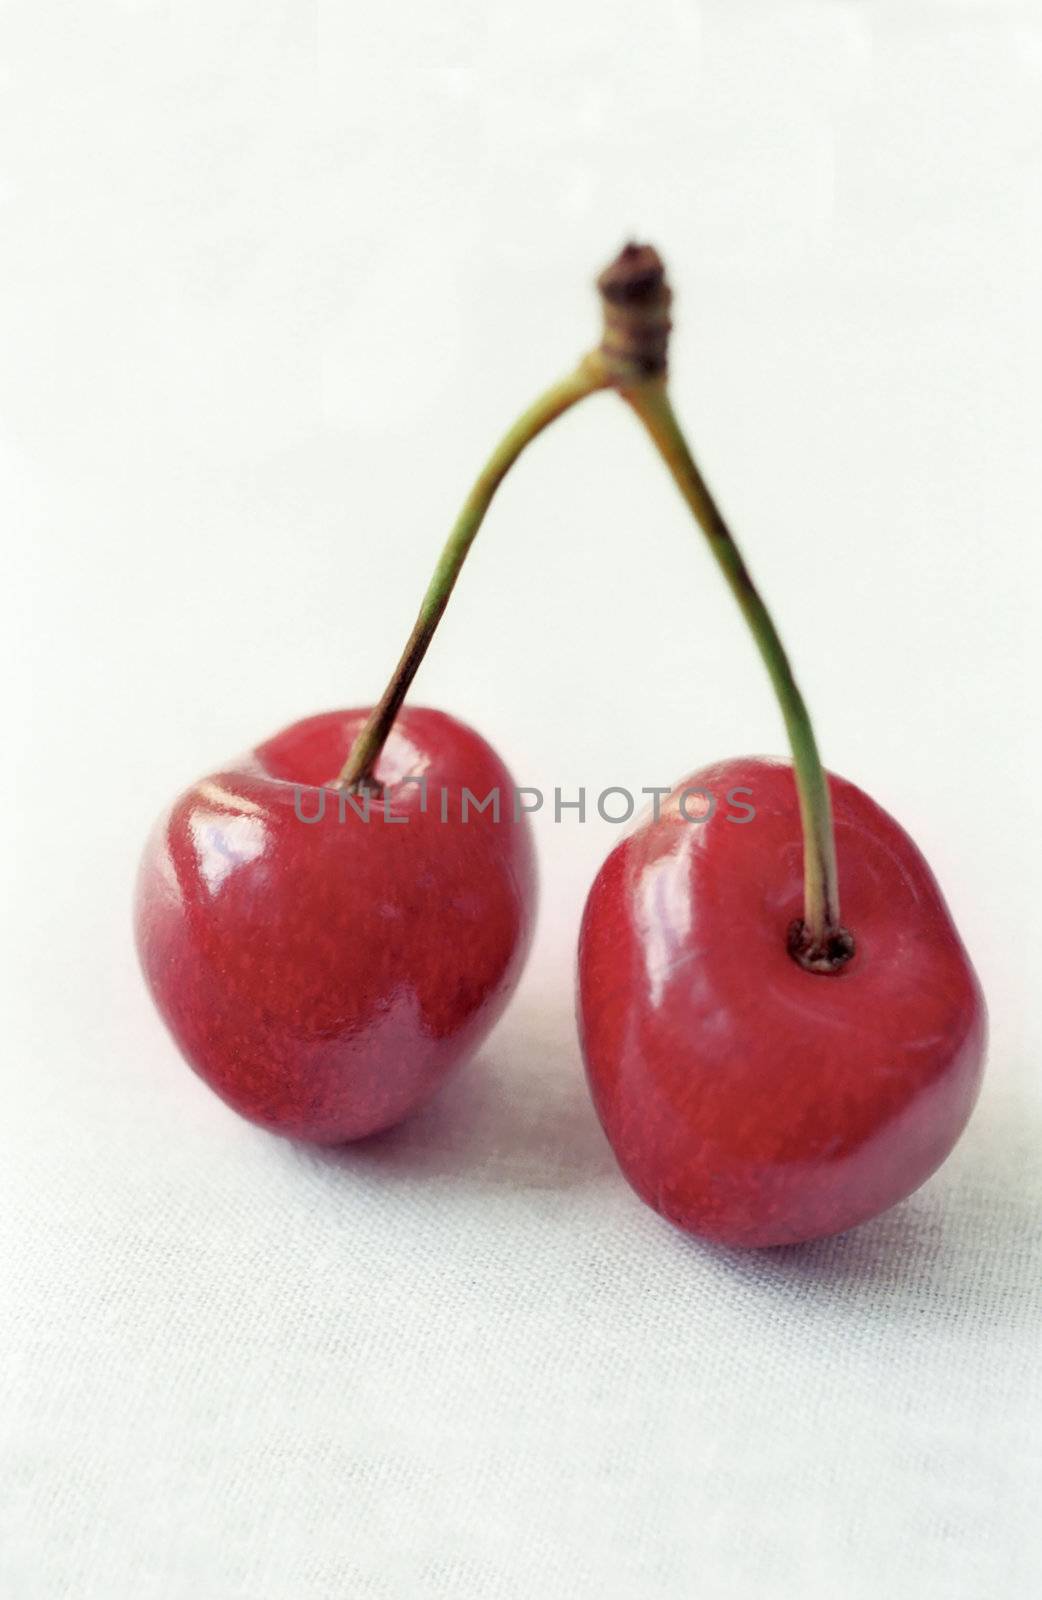 Two red cherries in macro